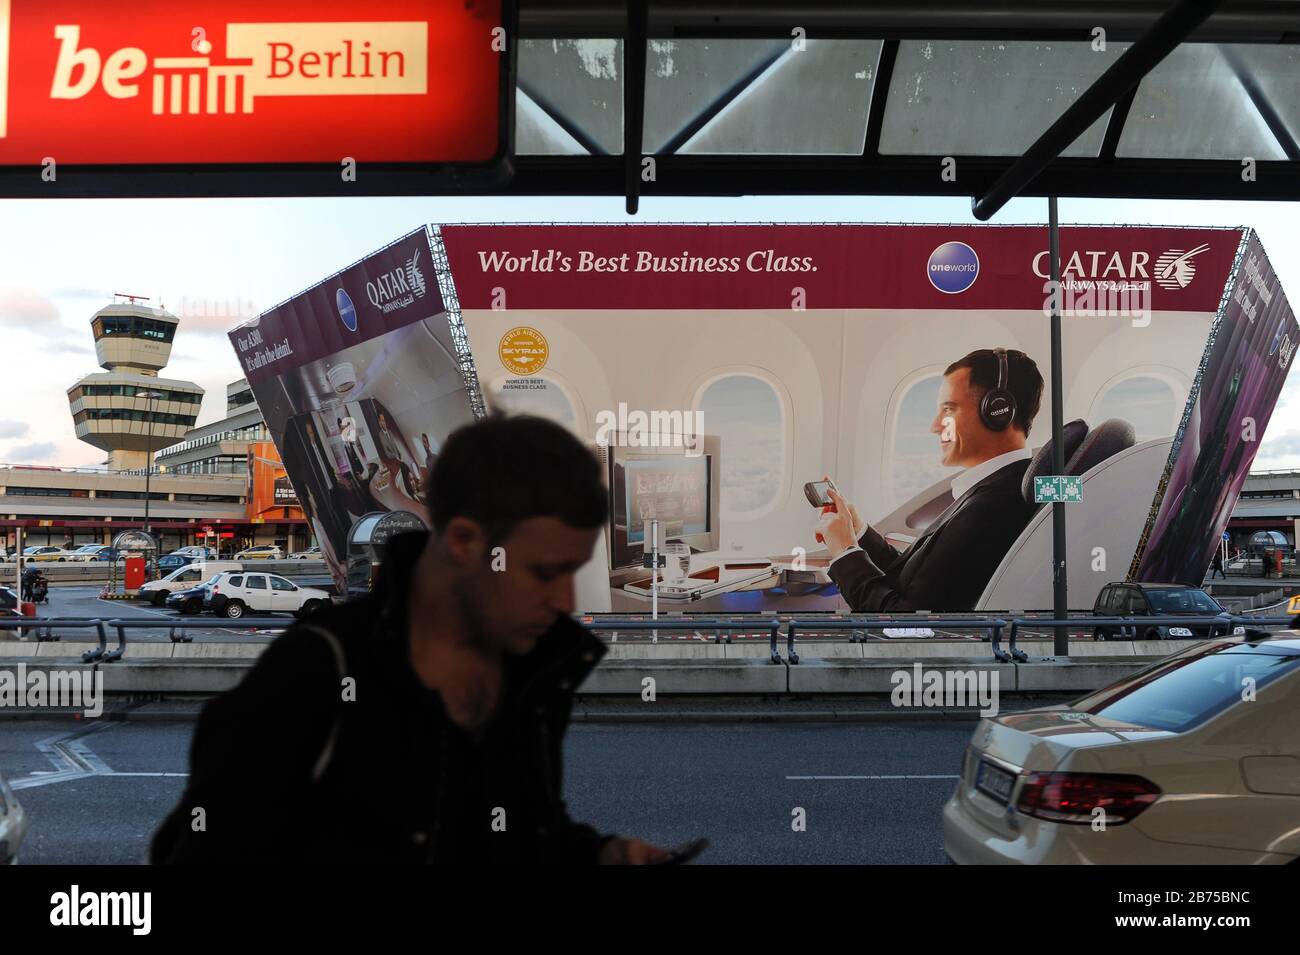 30.03.2015, Berlino, Germania, Europa - Pubblicità per la Business Class di Qatar Airways all'aeroporto di Berlino Tegel. [traduzione automatica] Foto Stock